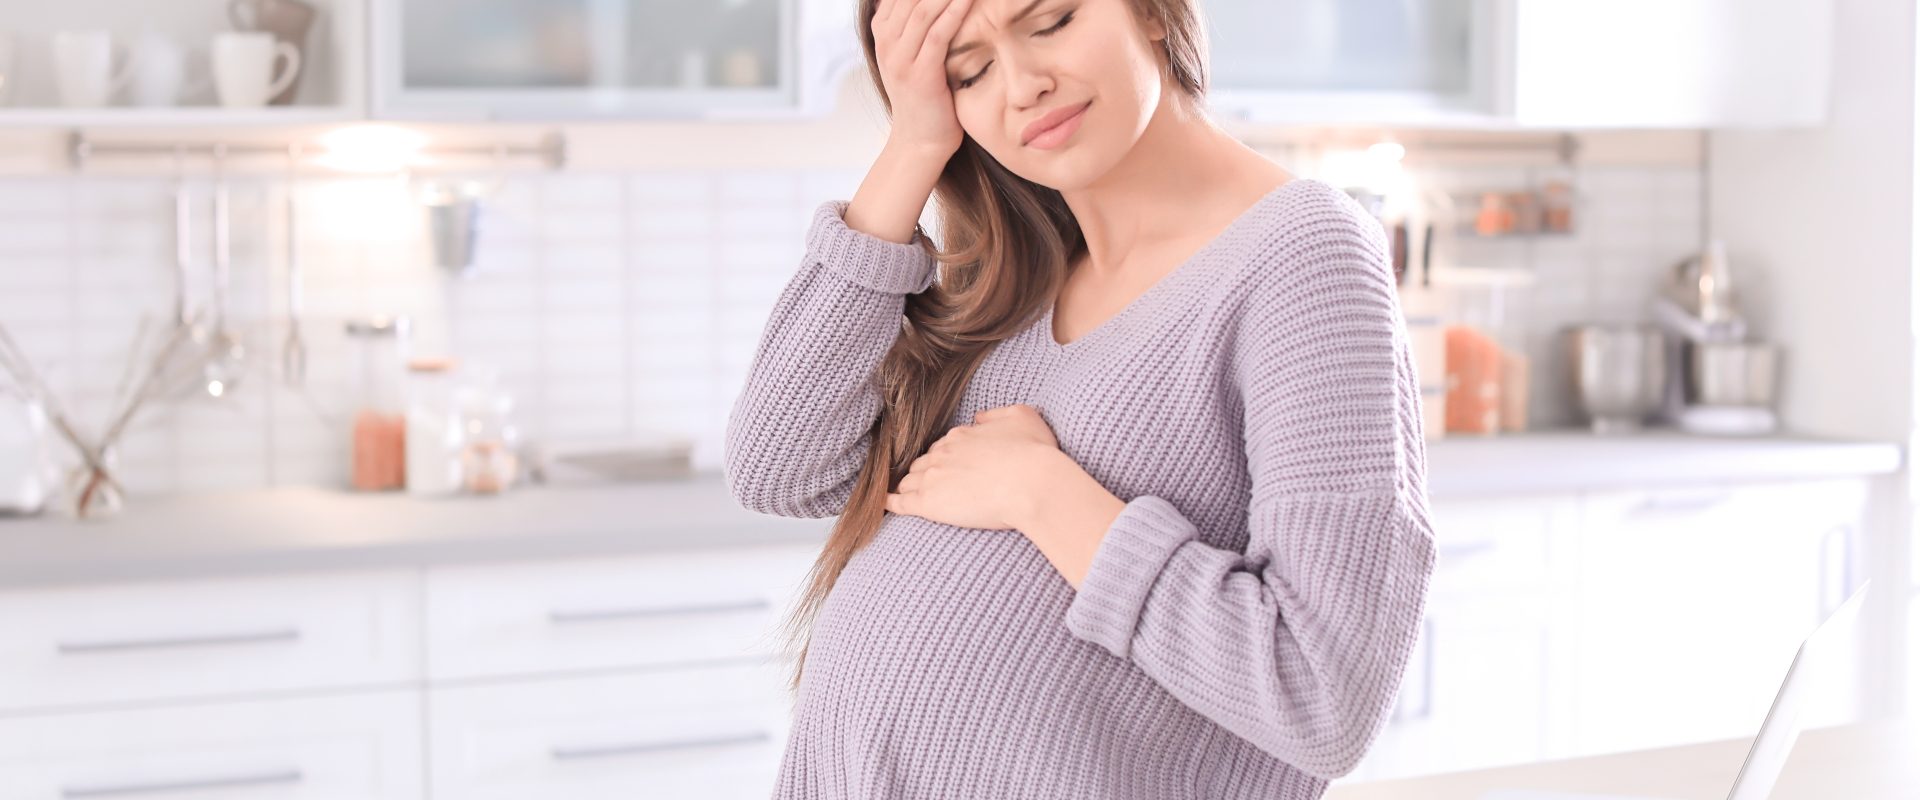 Ból głowy w ciąży - jak sobie z nim poradzić? Kobieta w zaawansowanej ciąży trzyma się za bolącą głowę, stojąc w kuchni.